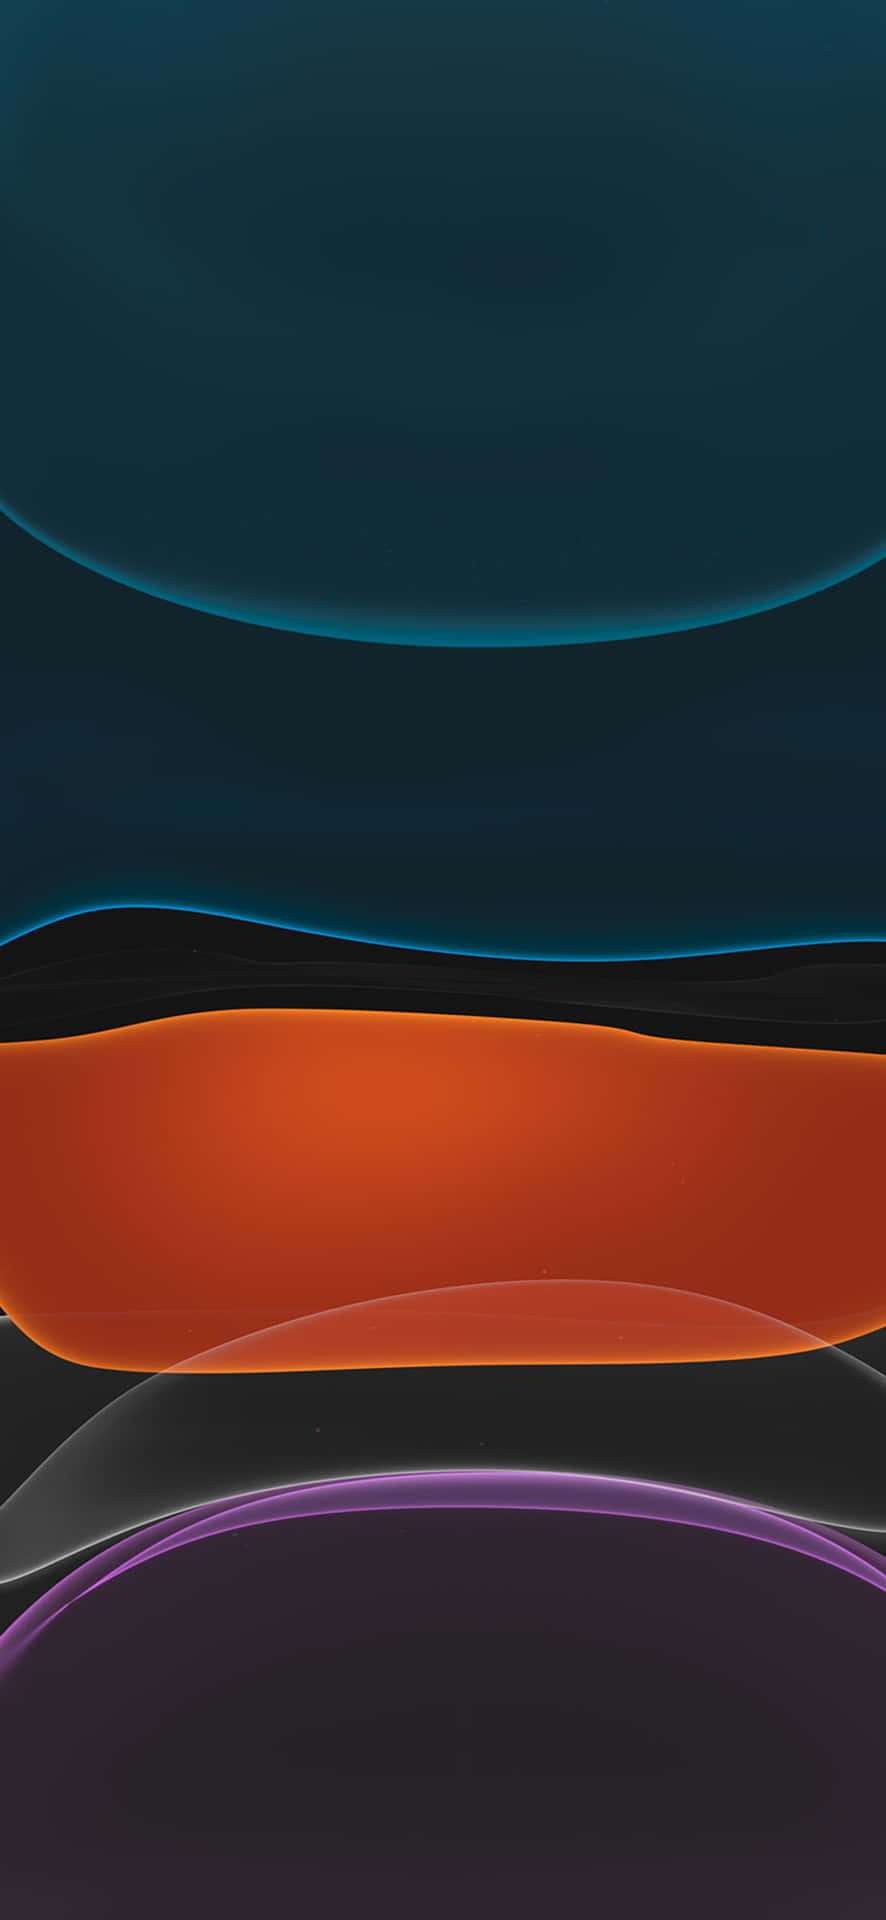 Capasde Colores Oscuros Con Estampado De Blobs Para El Iphone Xr. Fondo de pantalla